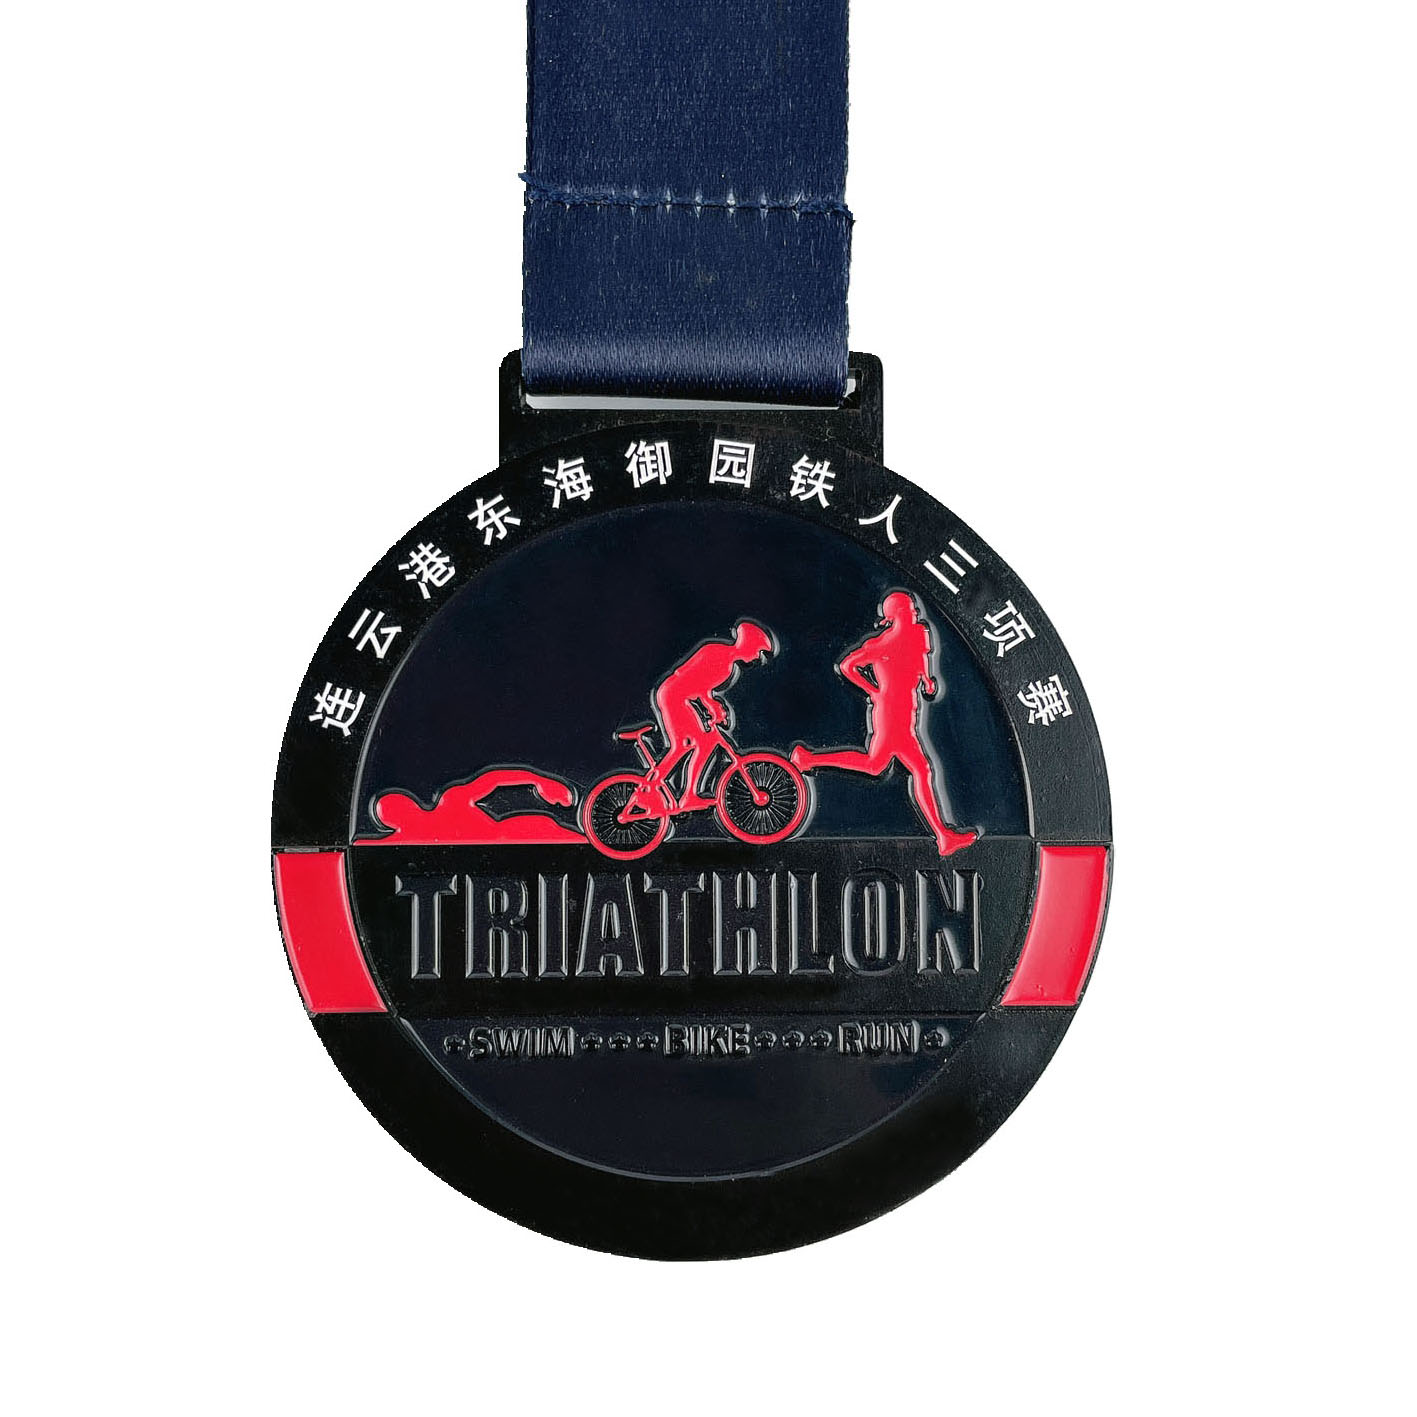 Black Finish Triathlon Medal